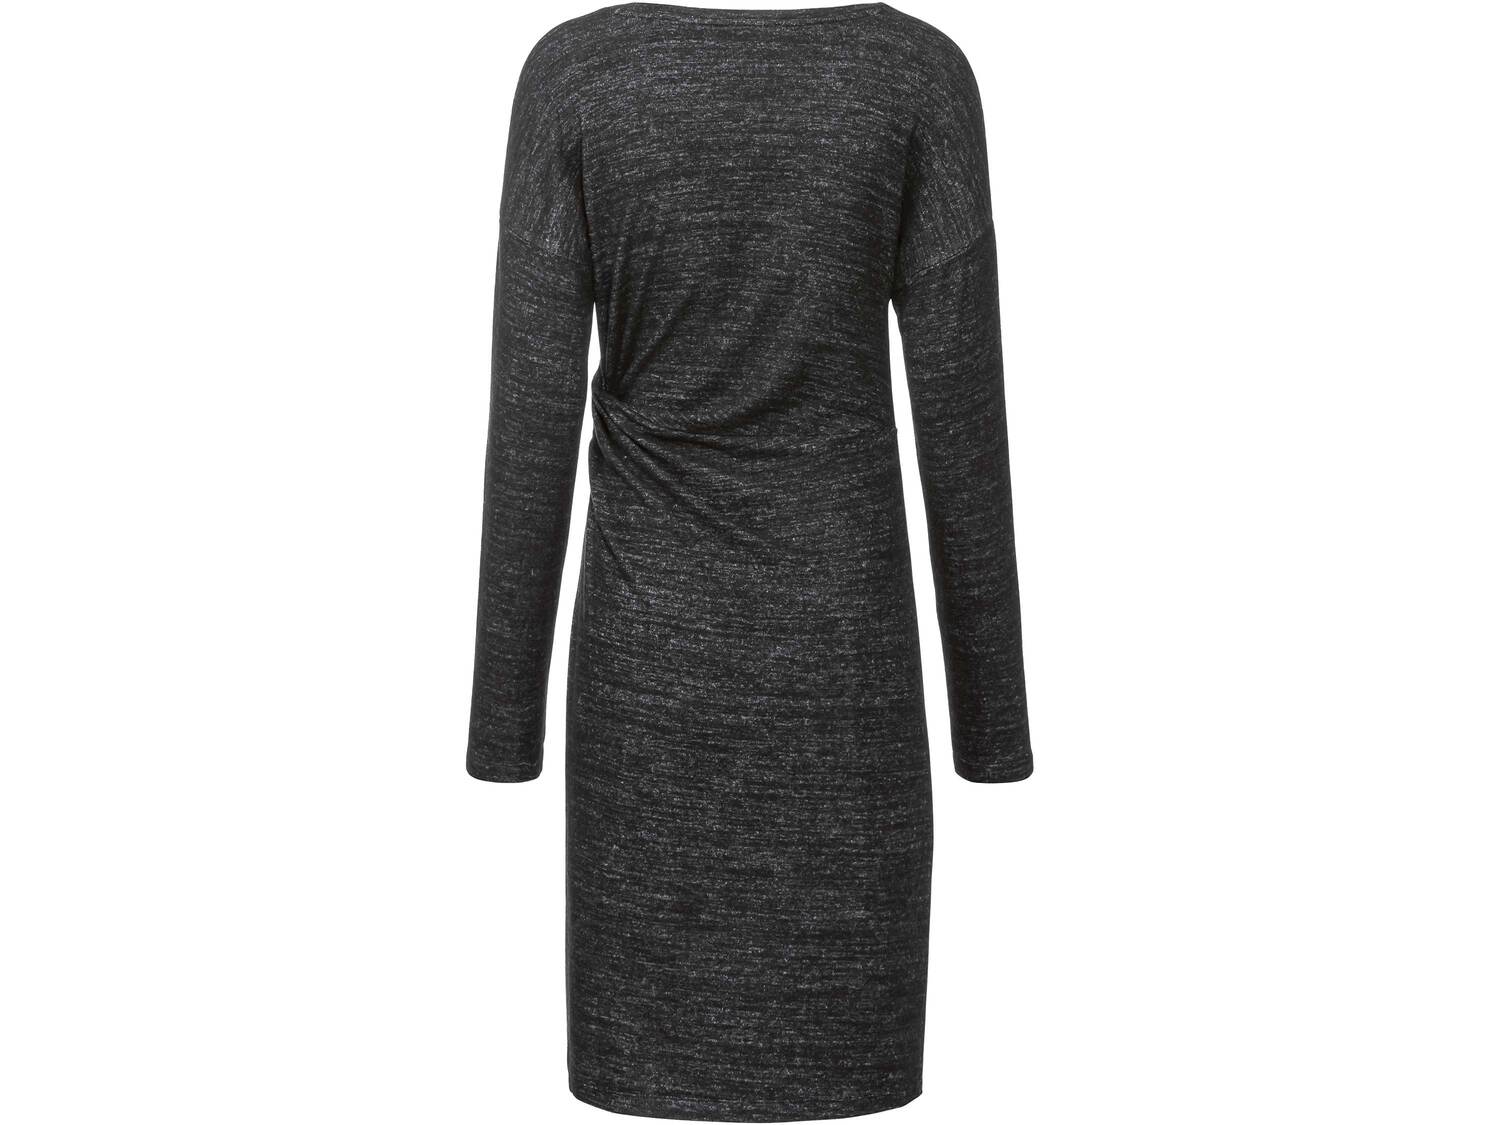 Sukienka damska Esmara, cena 34,99 PLN 
- rozmiary: XS-L
- miły w dotyku materiał
Dostępne ...